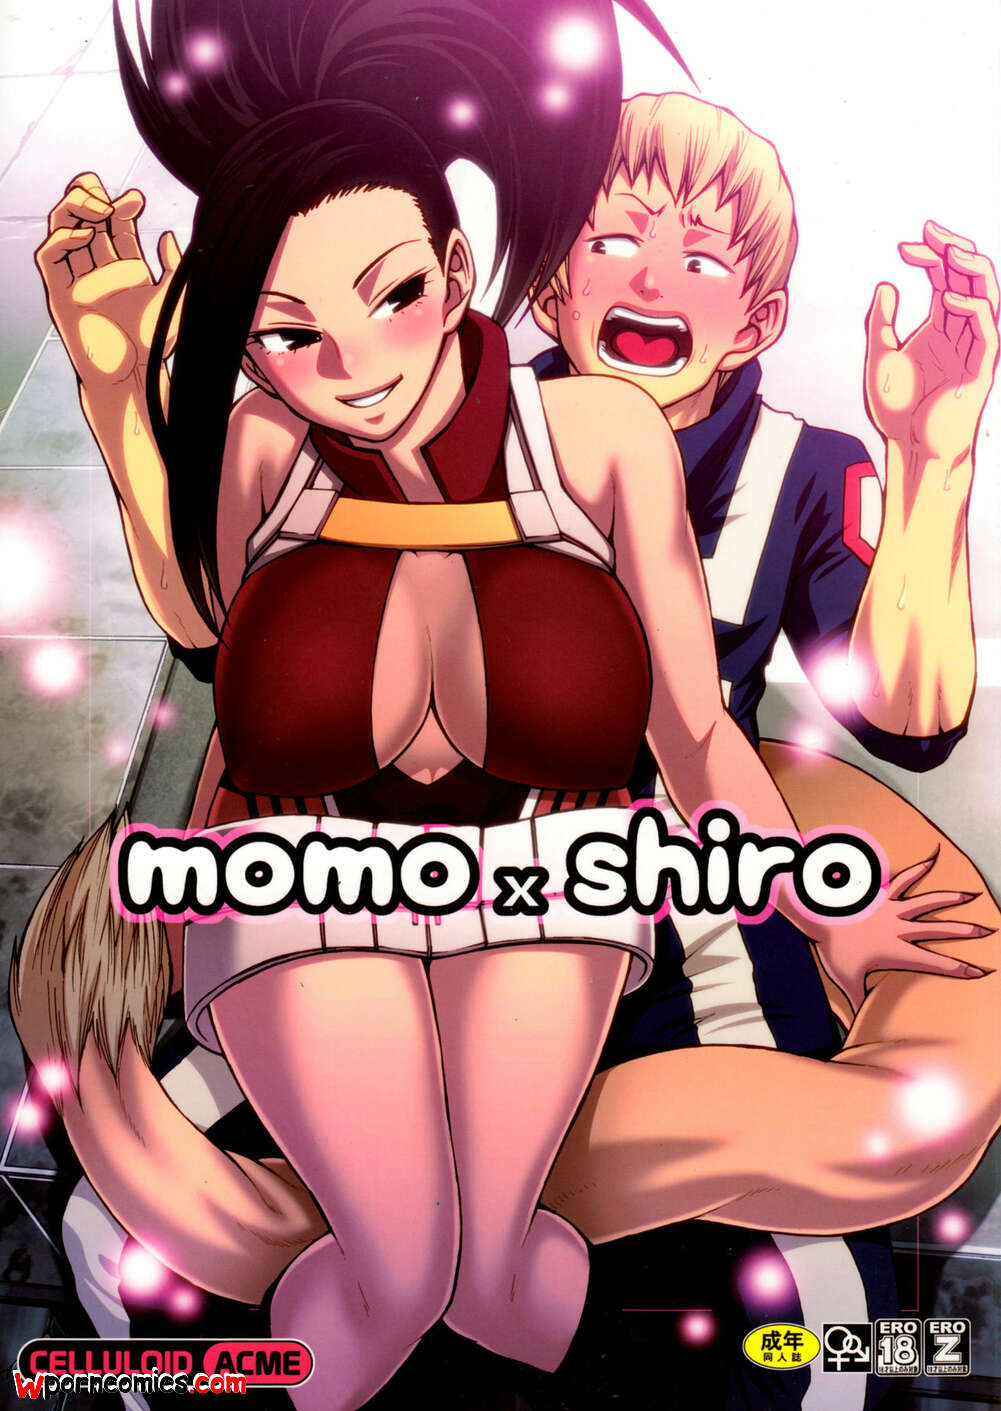 1001px x 1411px - âœ…ï¸ Porn comic Momo x Shiro. My Hero Academia Sex comic busty brunette meets  | Porn comics in English for adults only | sexkomix2.com